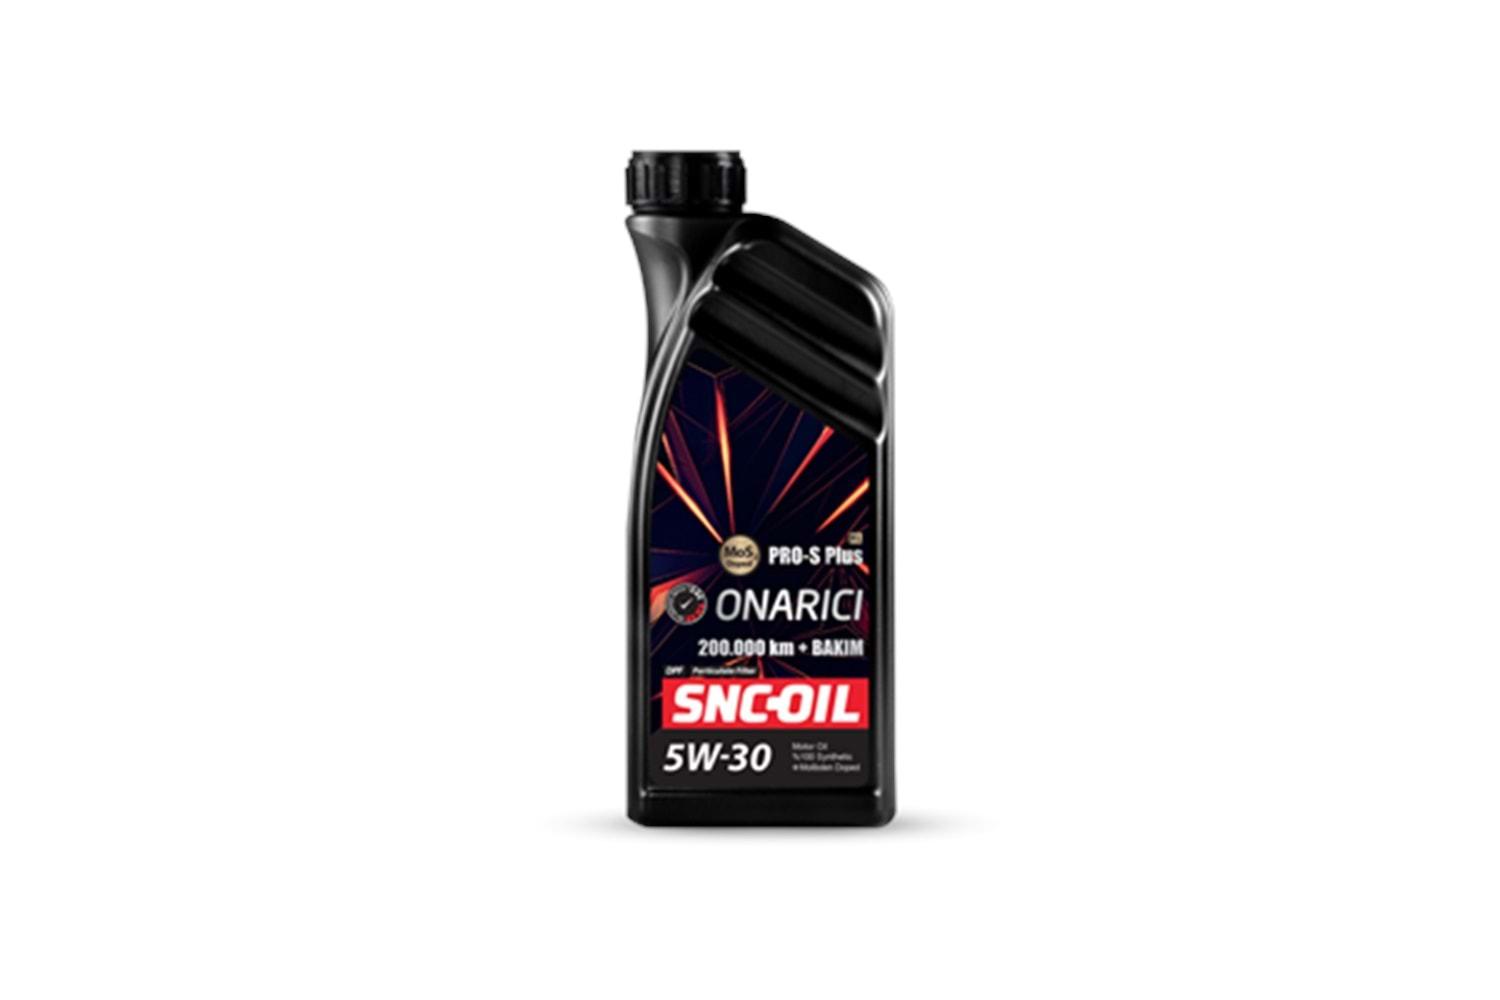 Snc Oil 200.000 Pro-S Plus Onarıcı 5w-30 Motor Yağı 1 Litre